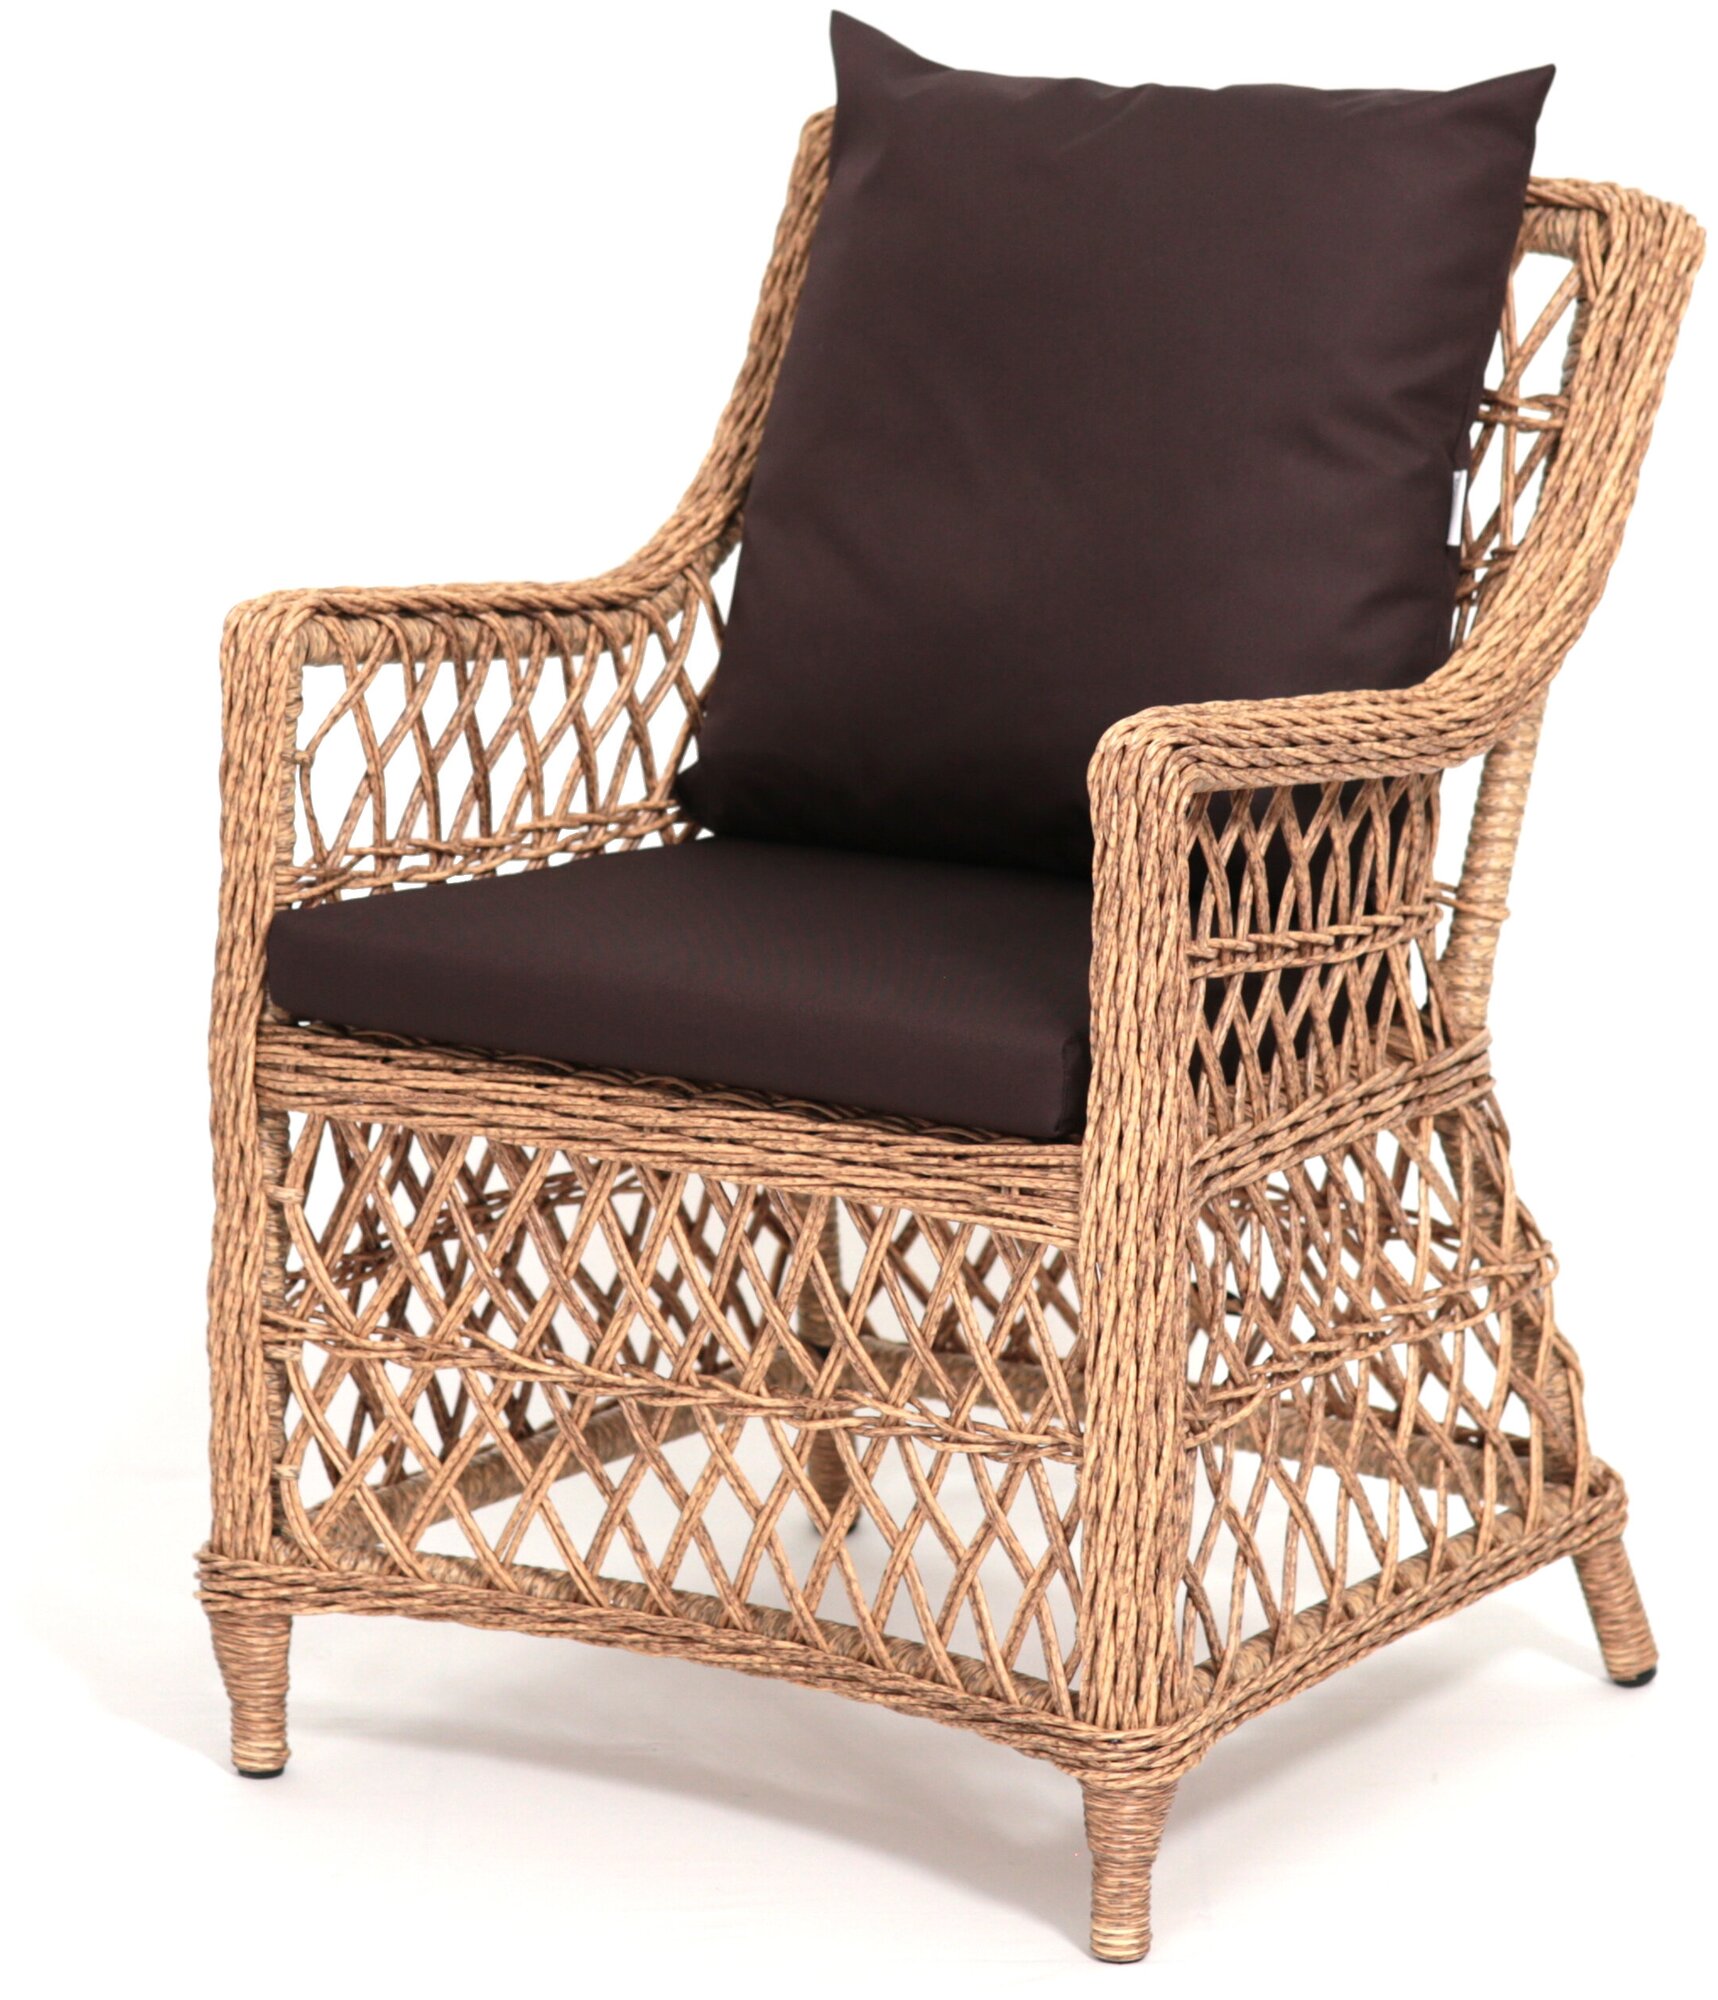 Кресло для отдыха Гайс Malacca, садовый стул, мебель из ротанга для дачи, сада, загородного дома. Цвет — индийское дерево